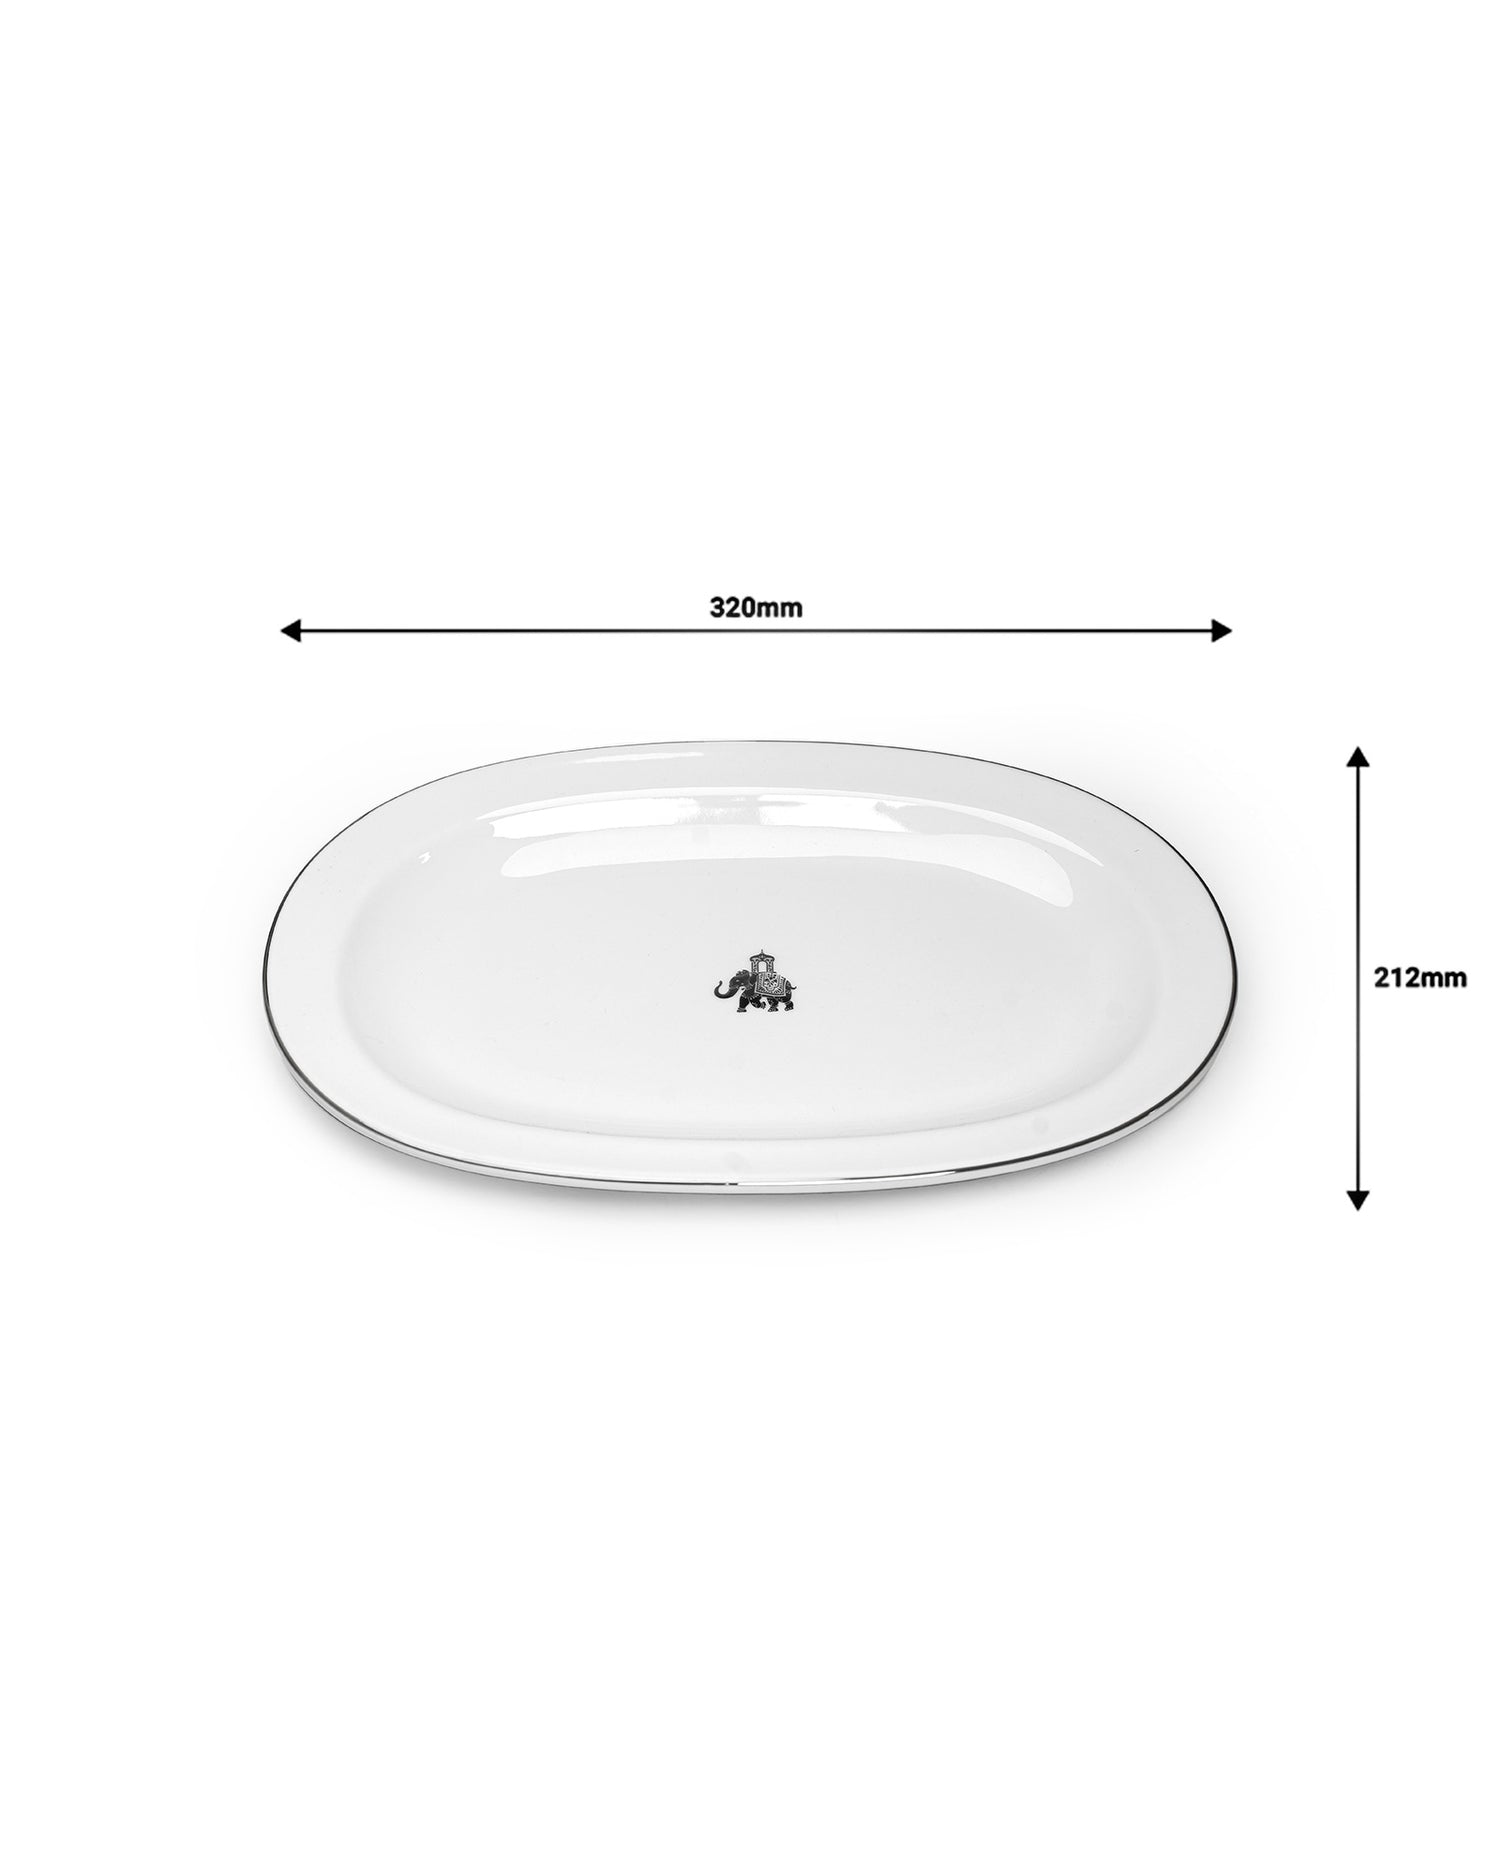 Gaj Oval Platter - Single pc (Large)